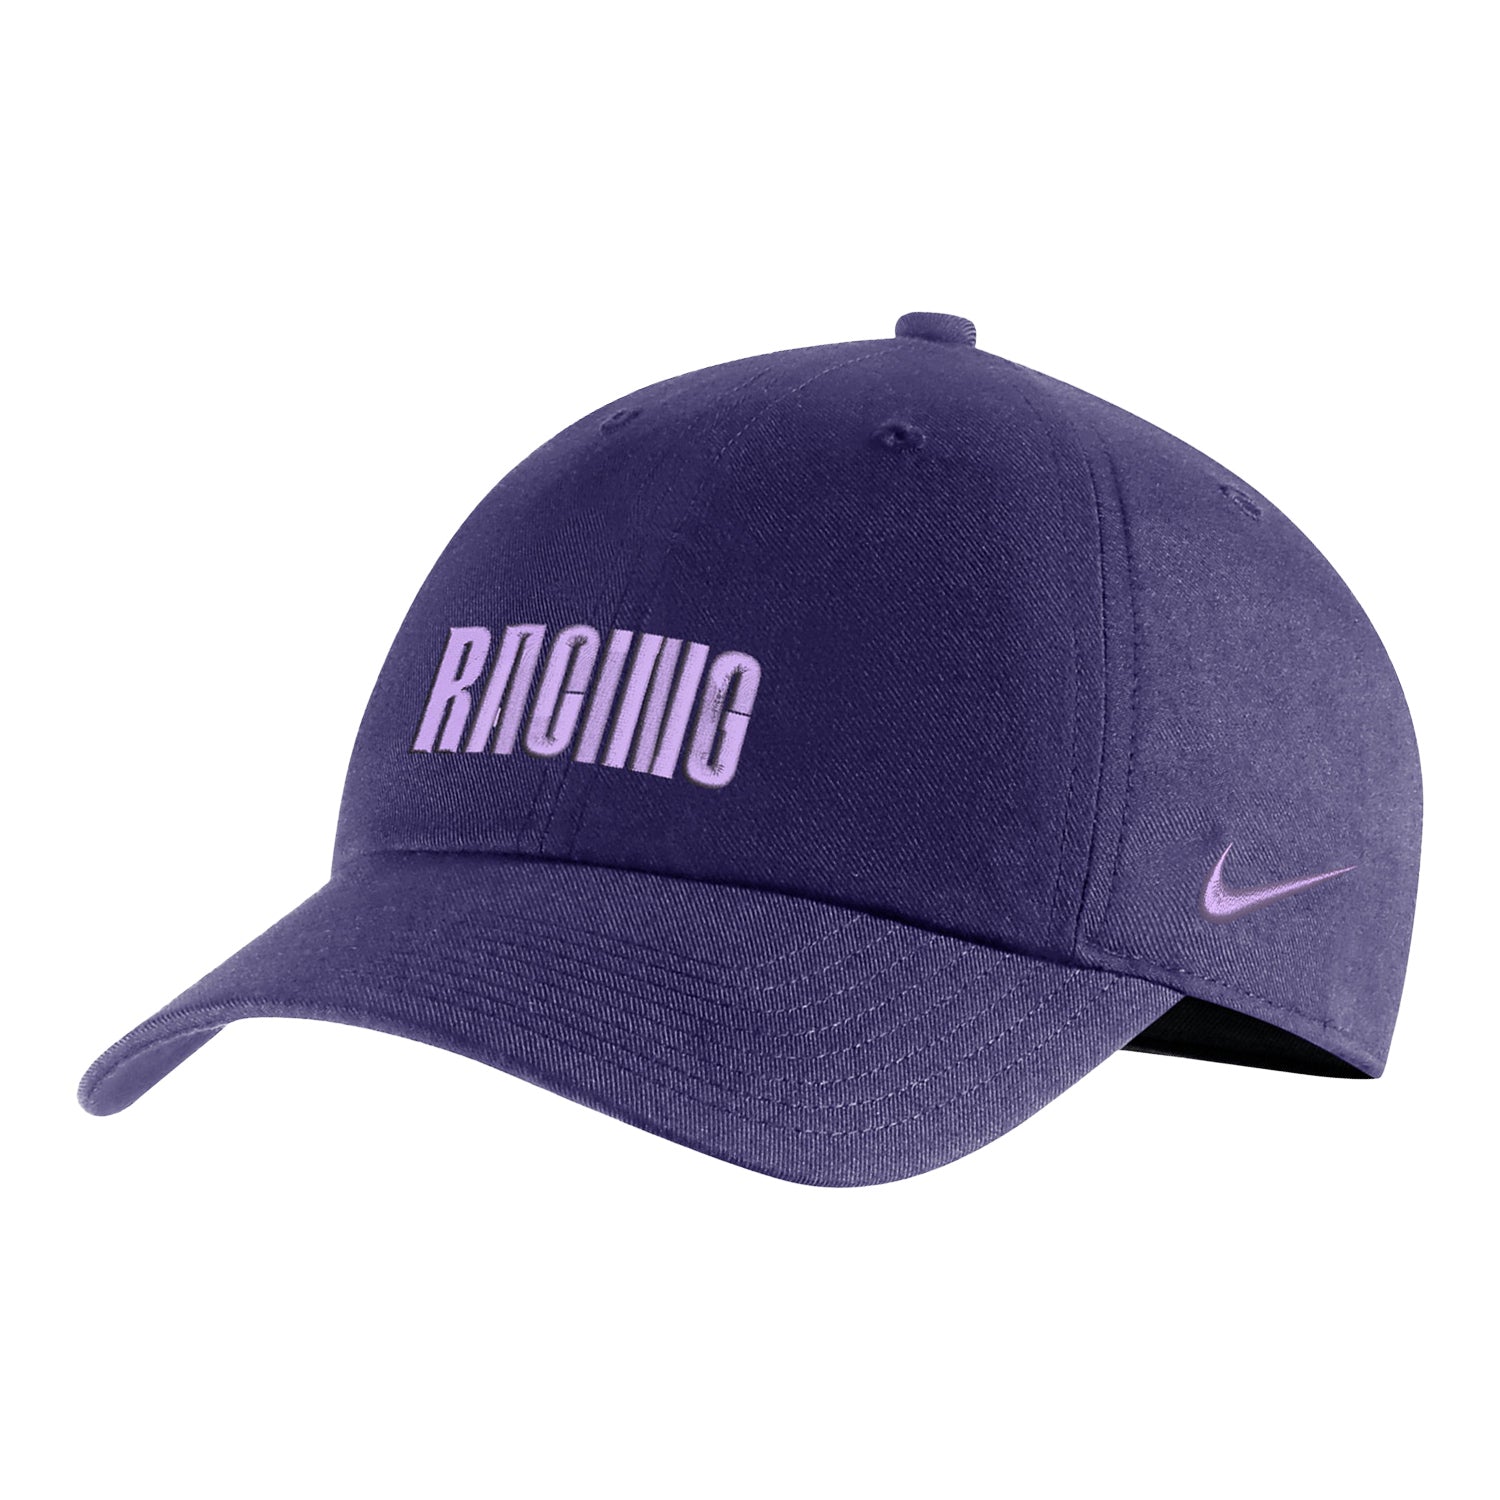 Racing Louisville Nike Snapback Hat